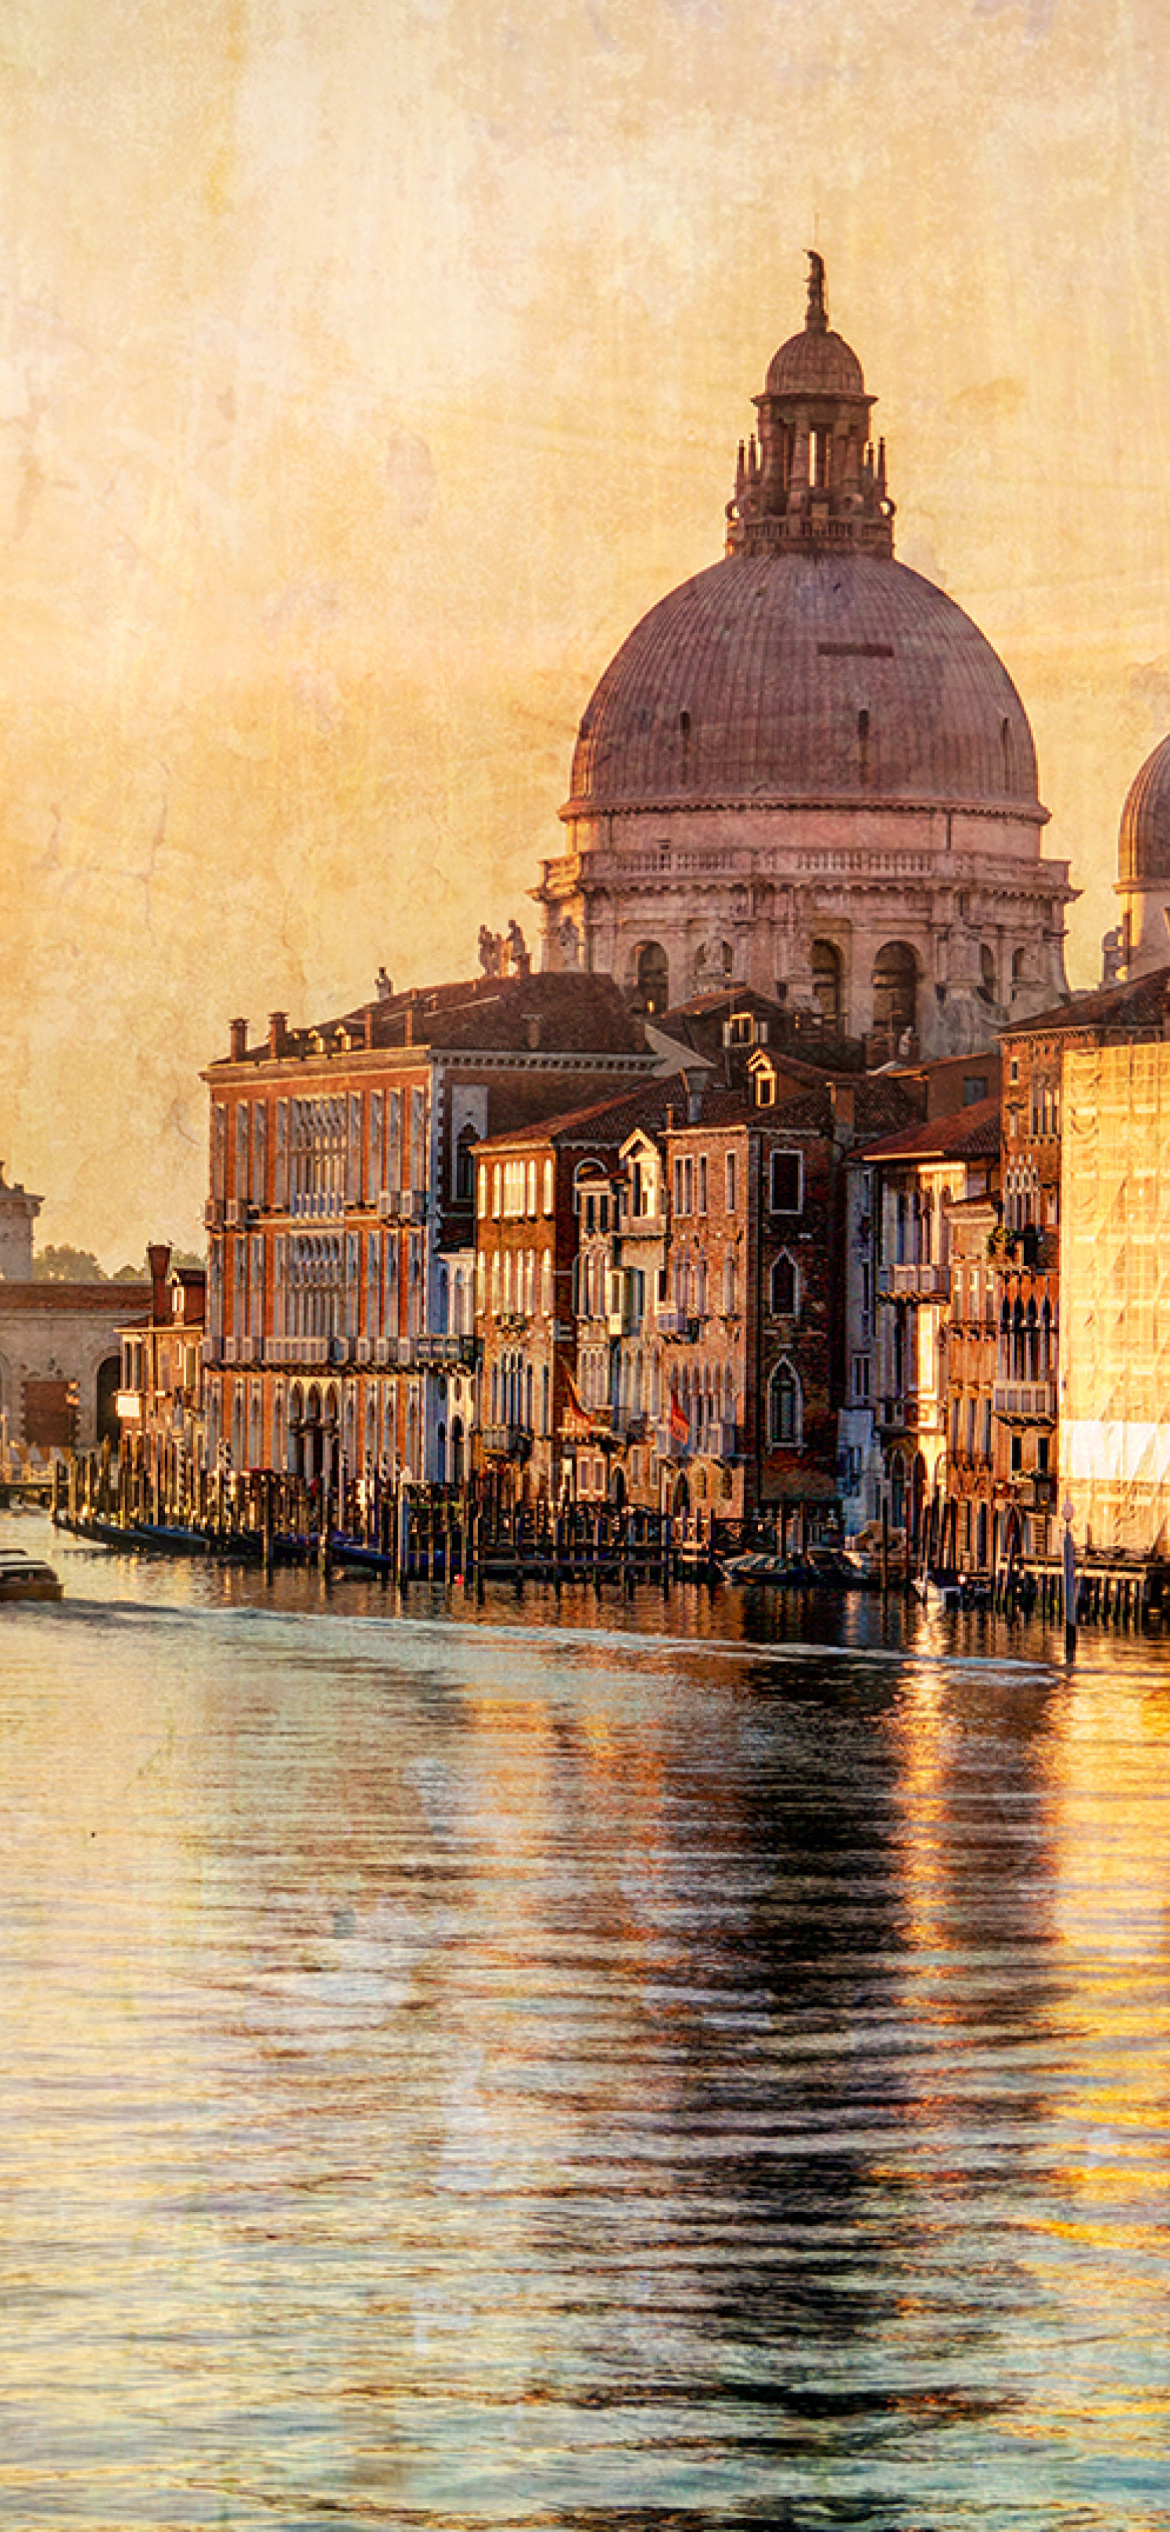 Venice Grand Canal Art wallpaper 1170x2532